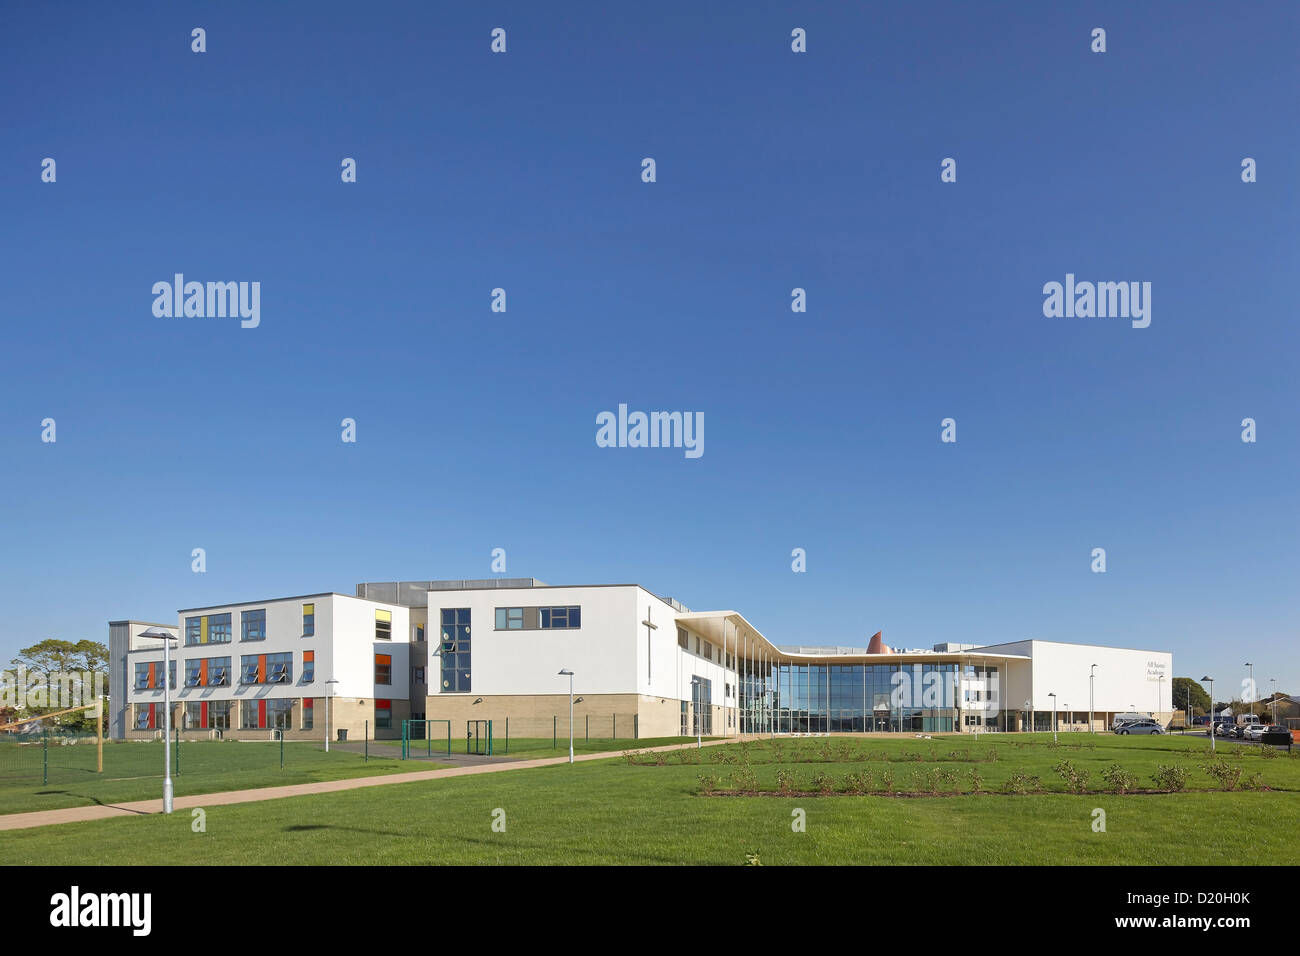 Alle Heiligen Akademie, Chelteham, Vereinigtes Königreich. Architekt: Nicholas Hare Architekten LLP, 2012. Umfassende Erhebung in Landschaften Stockfoto